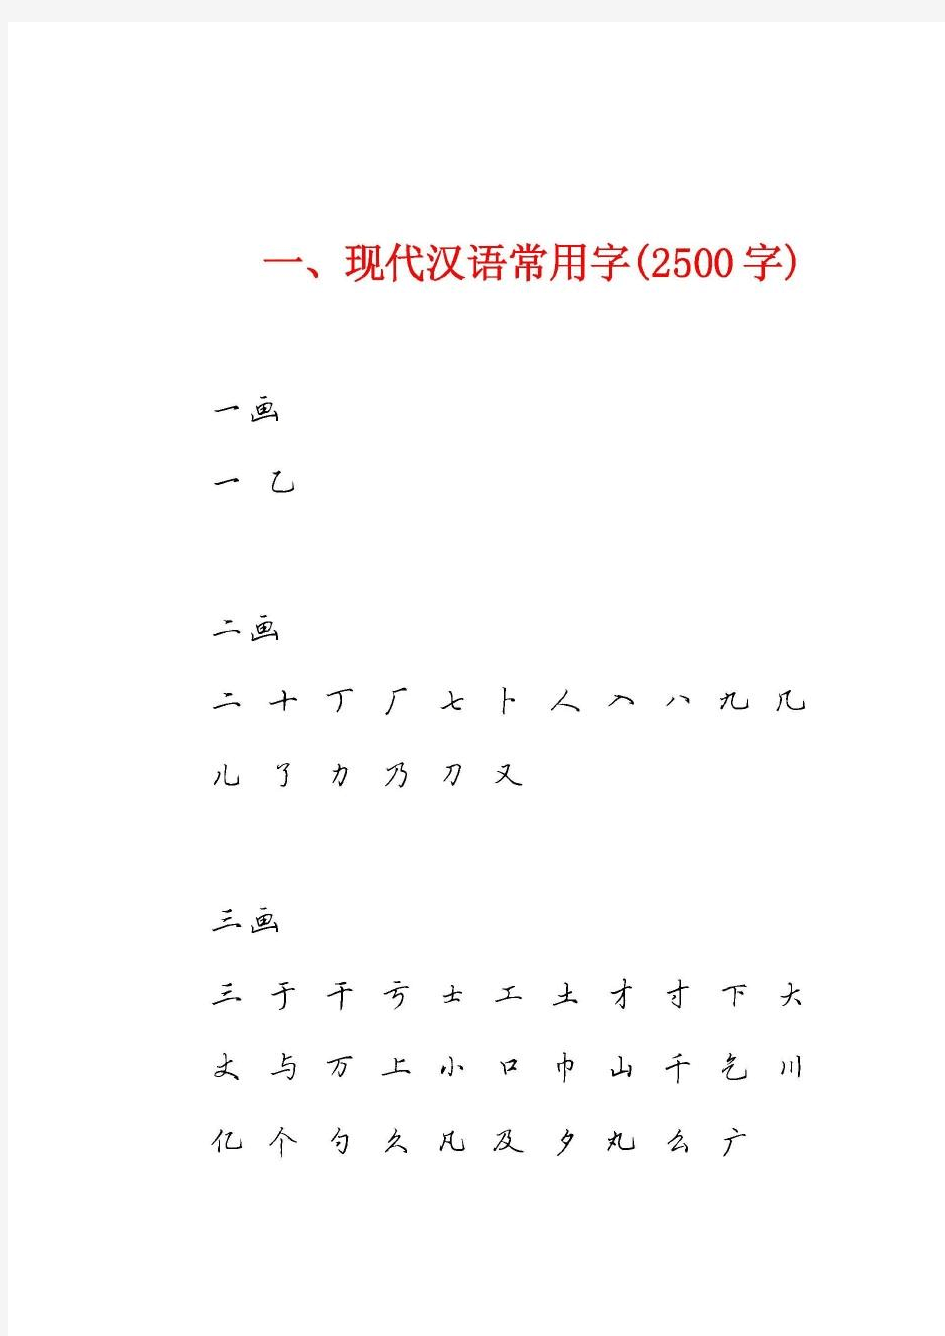 田英章硬笔行书3500常用字字帖。高清